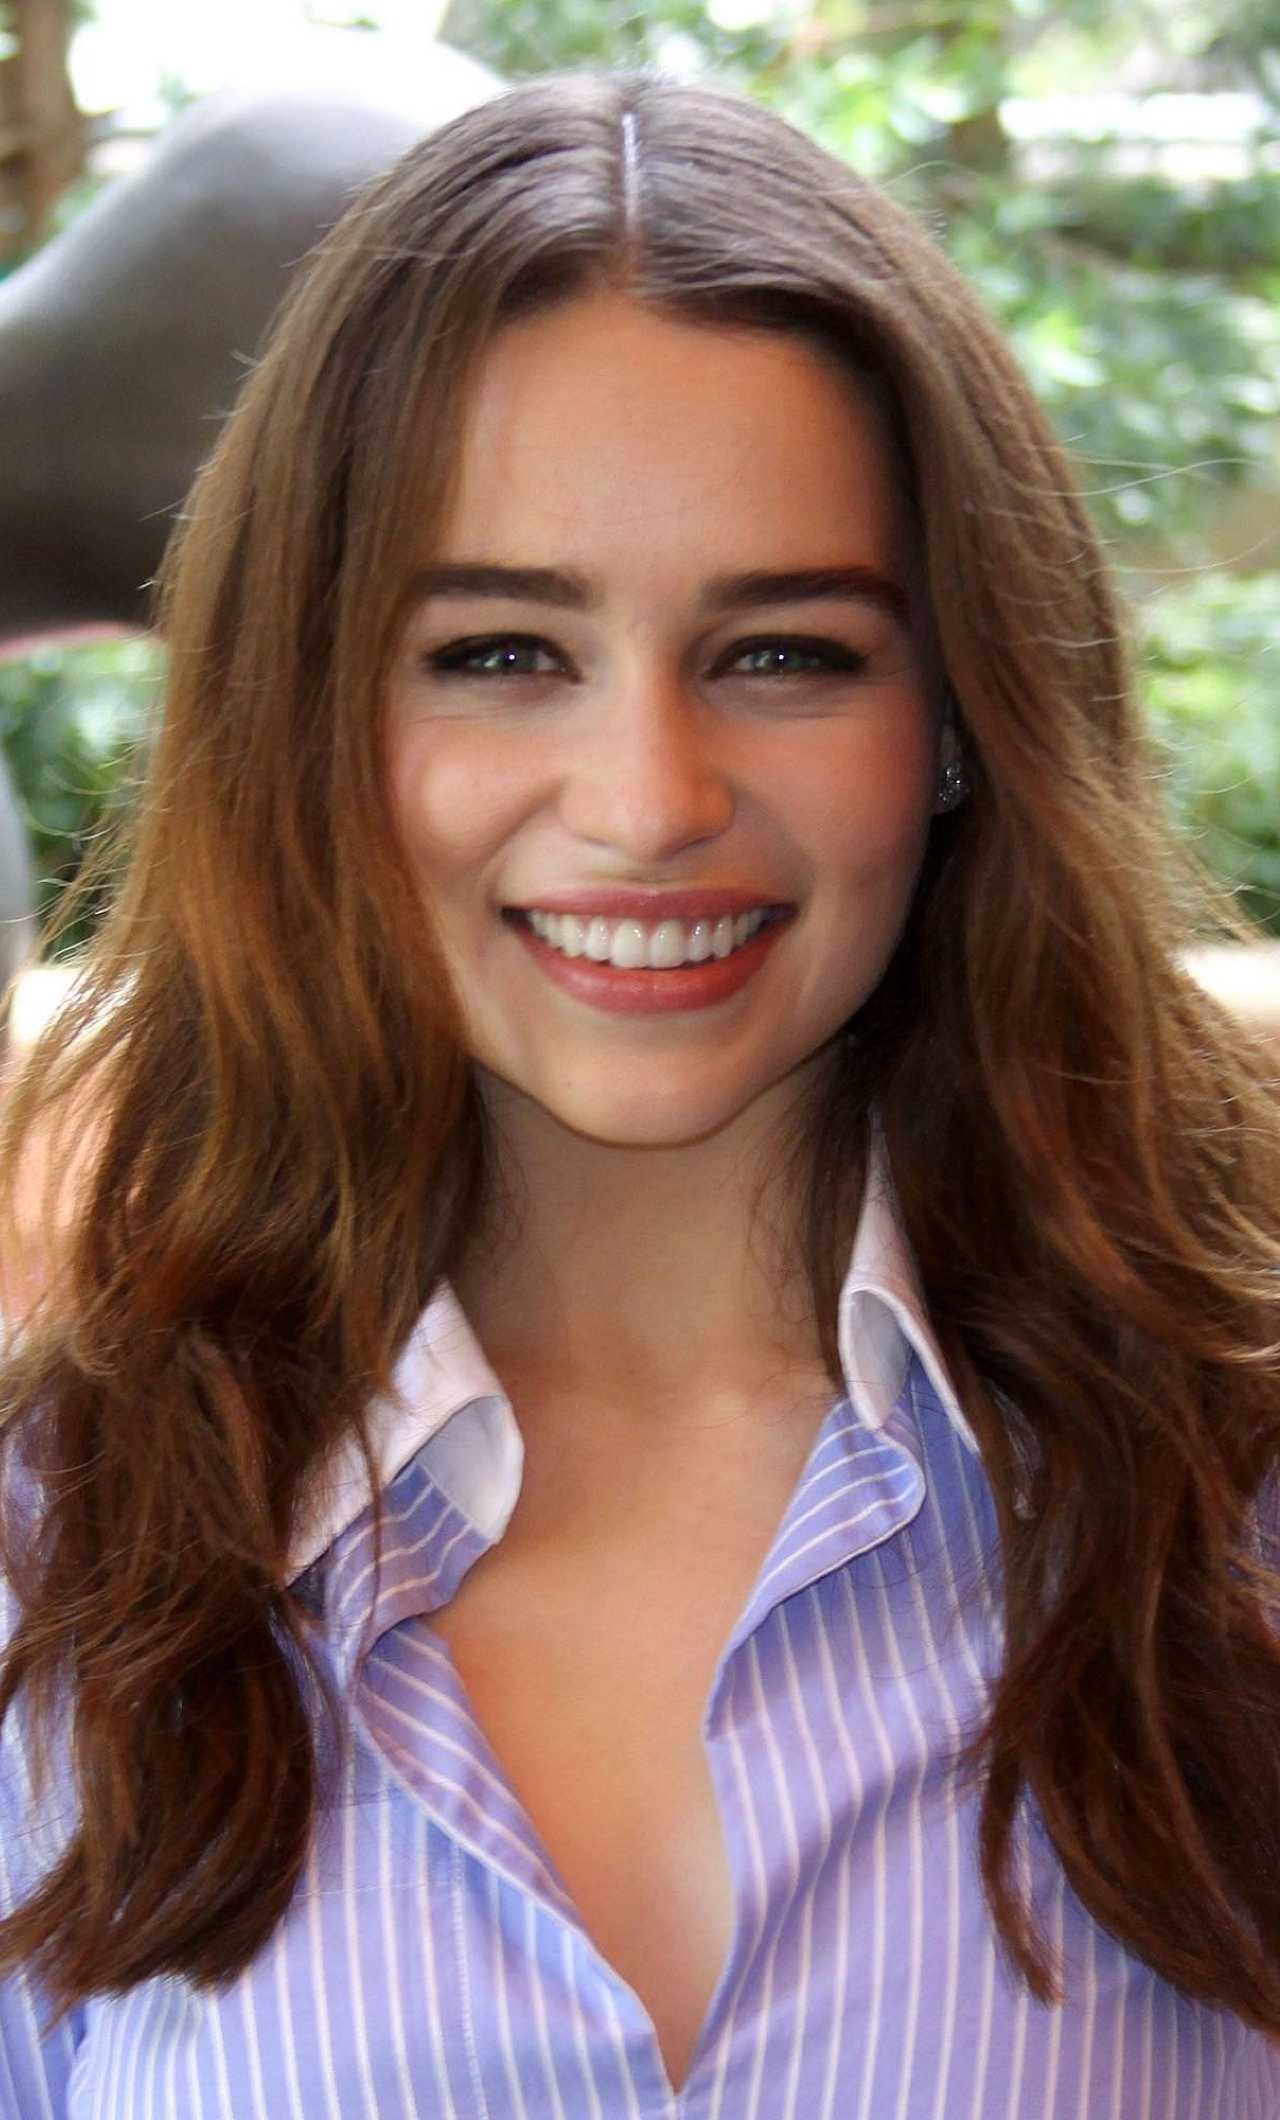 Emilia Clarke Cute Smile iPhone 6 plus Wallpaper